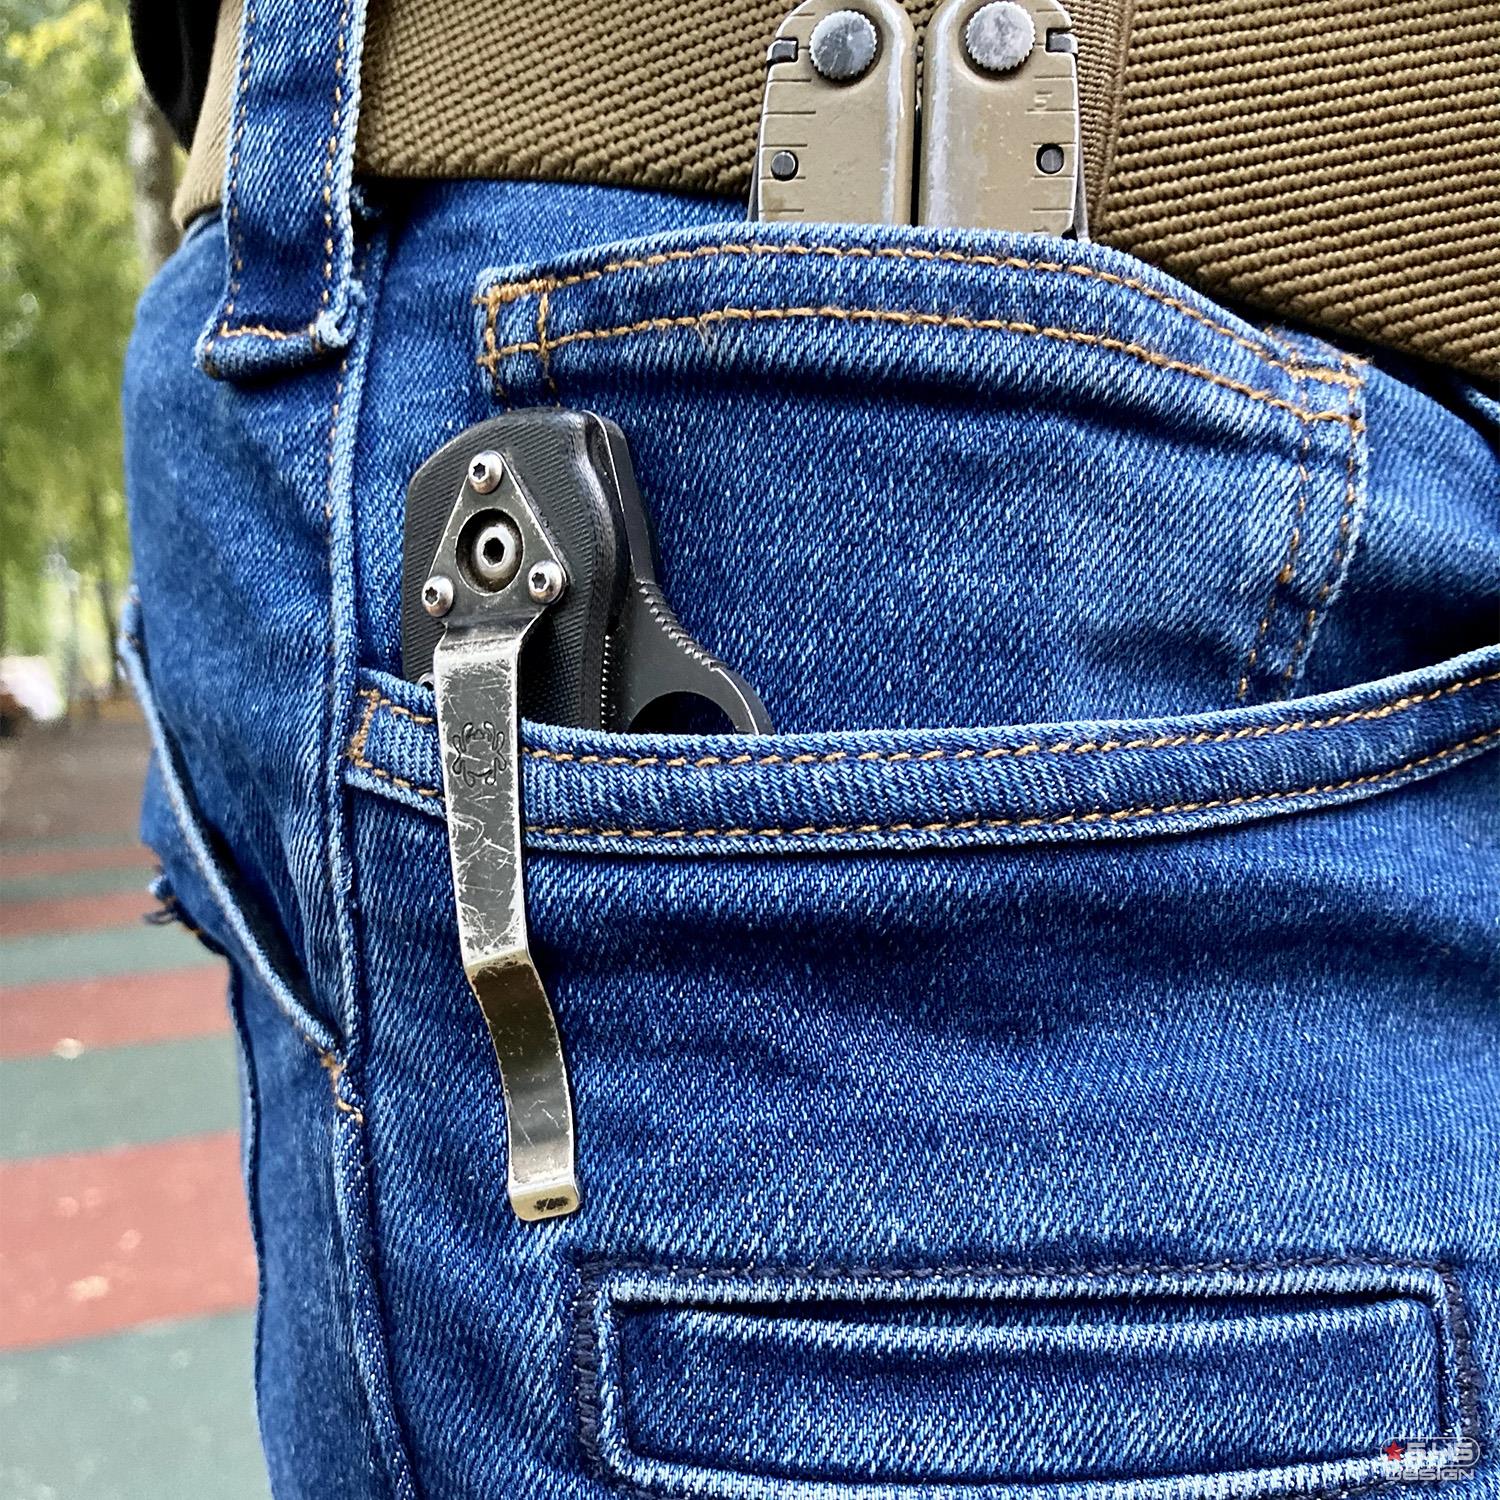 Специальное усиление на передних карманах сделано для более надёжной фиксации клипсы ножа